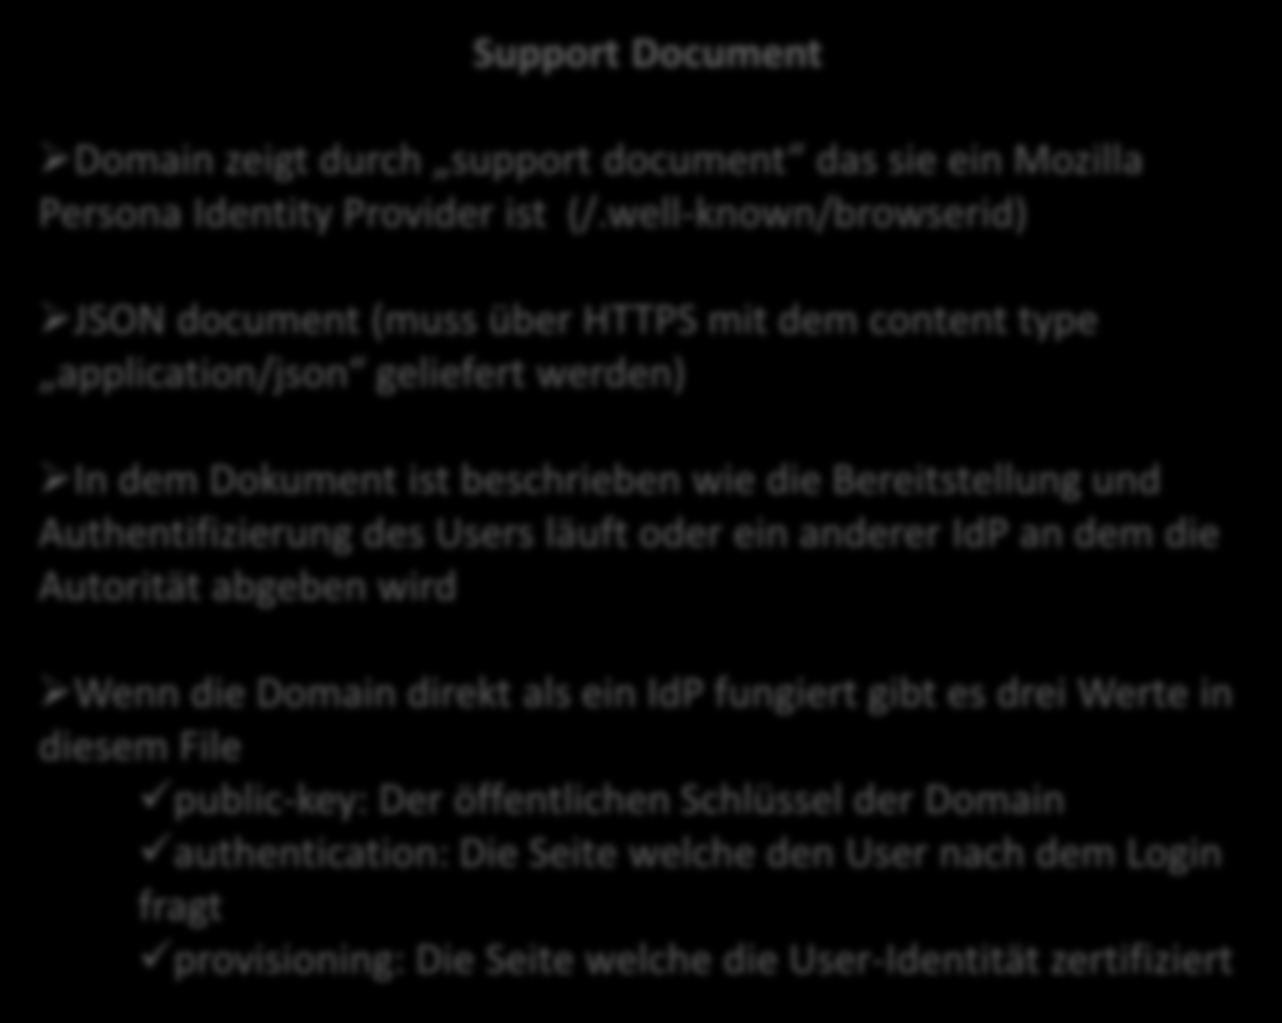 Protokoll und Implementierung Support Document Domain zeigt durch support document das sie ein Mozilla Persona Identity Provider ist (/.